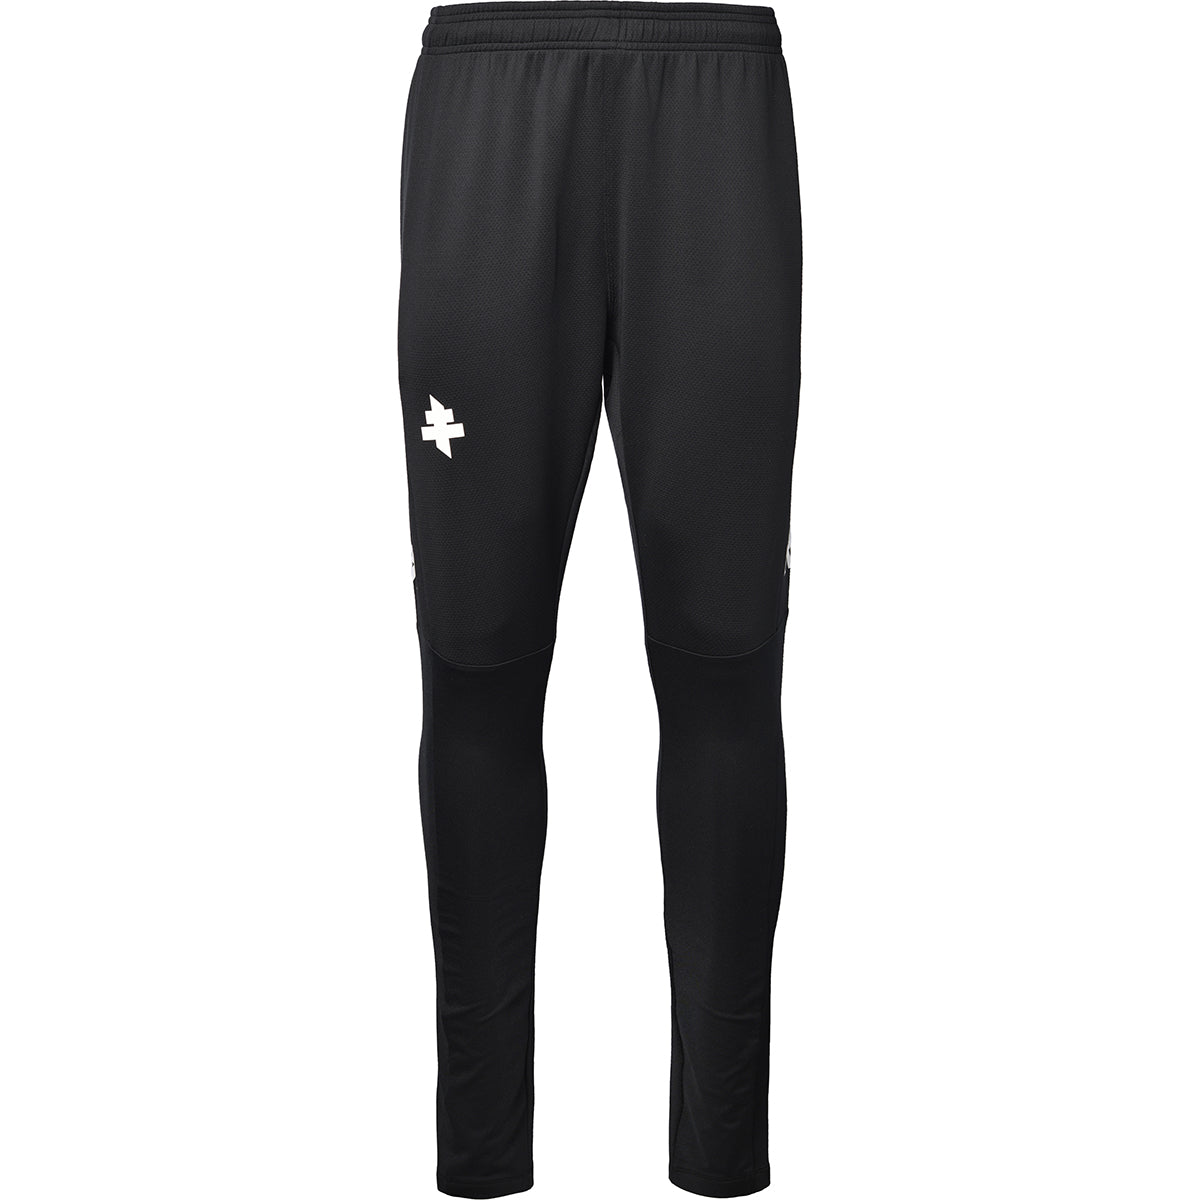 Pantalon de jogging Atrech Pro 5 FC Metz Noir homme - image 1